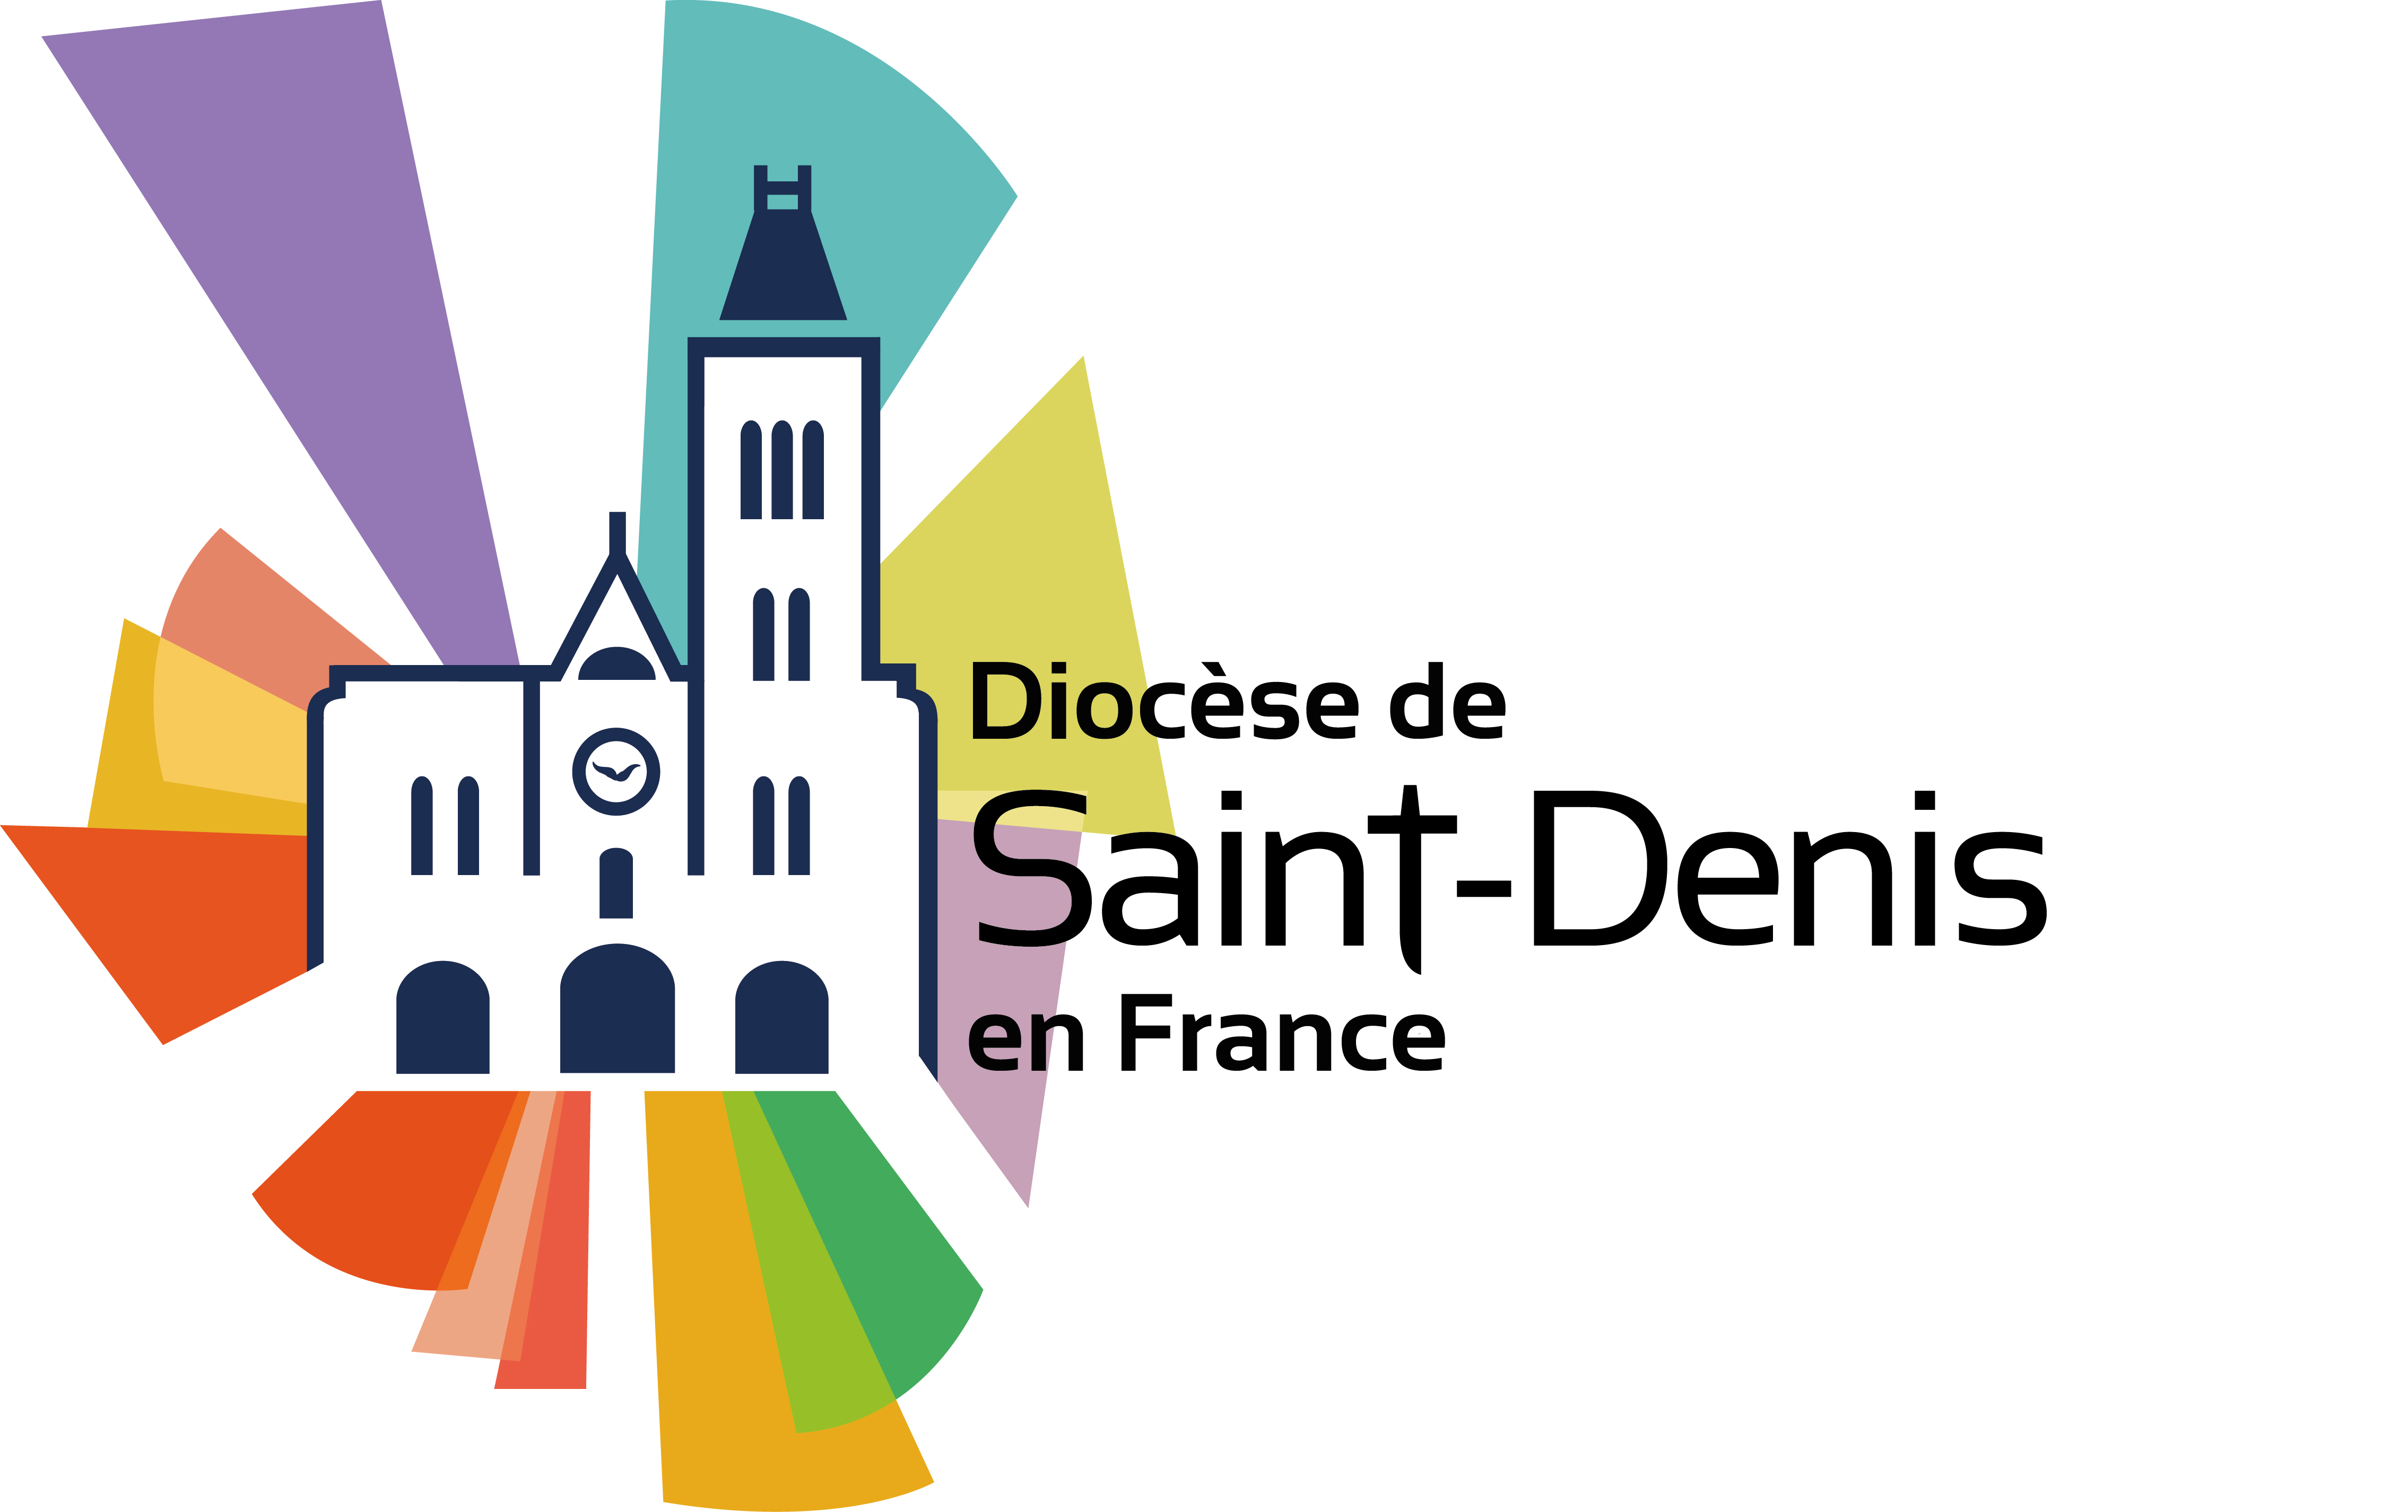 Le diocèse de Saint-Denis (93) lance un appel aux bénévoles pour la “Nuit des cathédrales” 2019